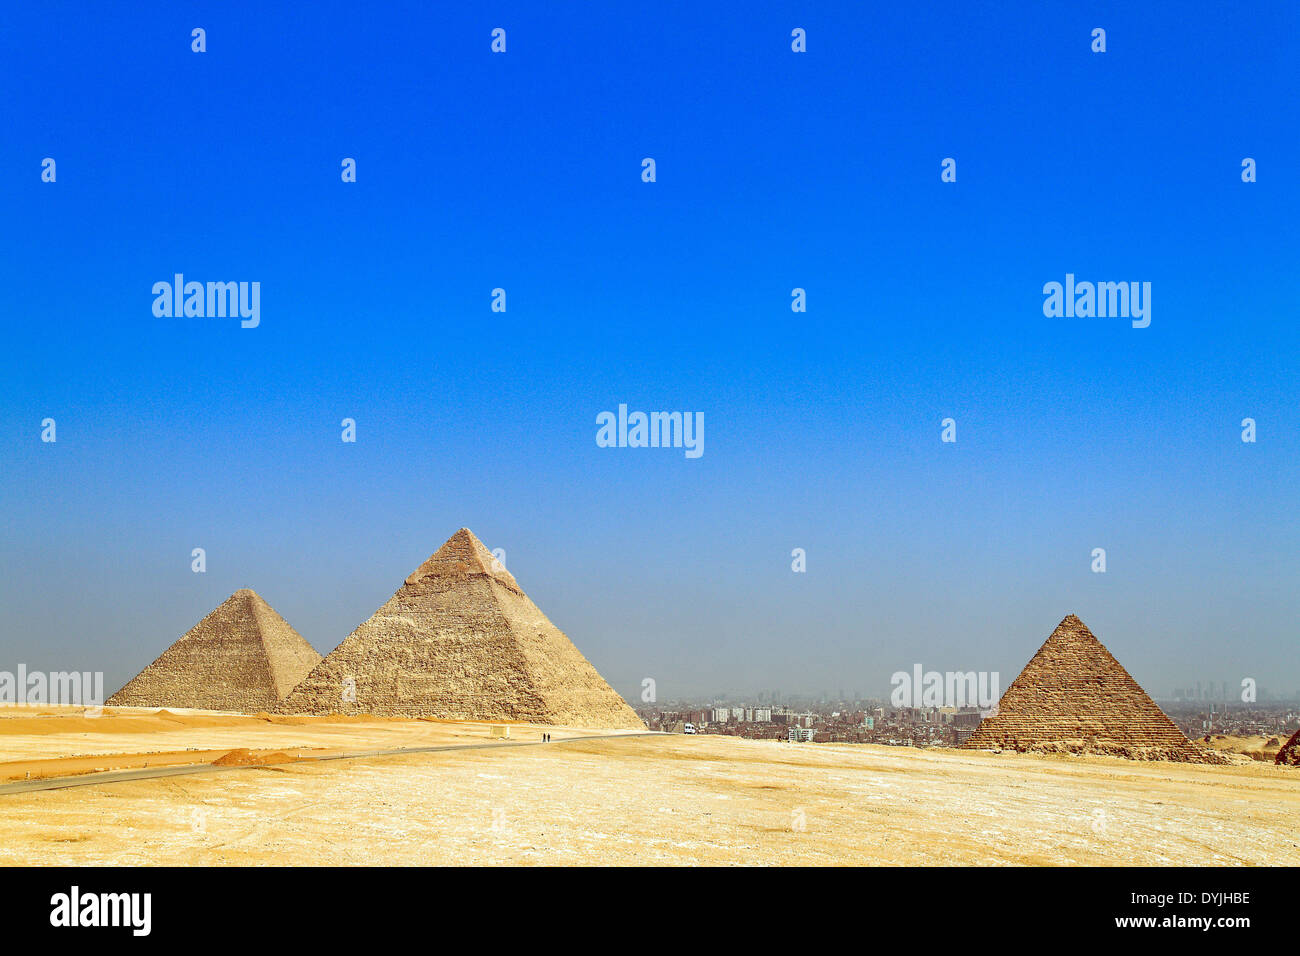 Punto culminante de un viaje a Egipto son las Pirámides de Giza. Foto de stock